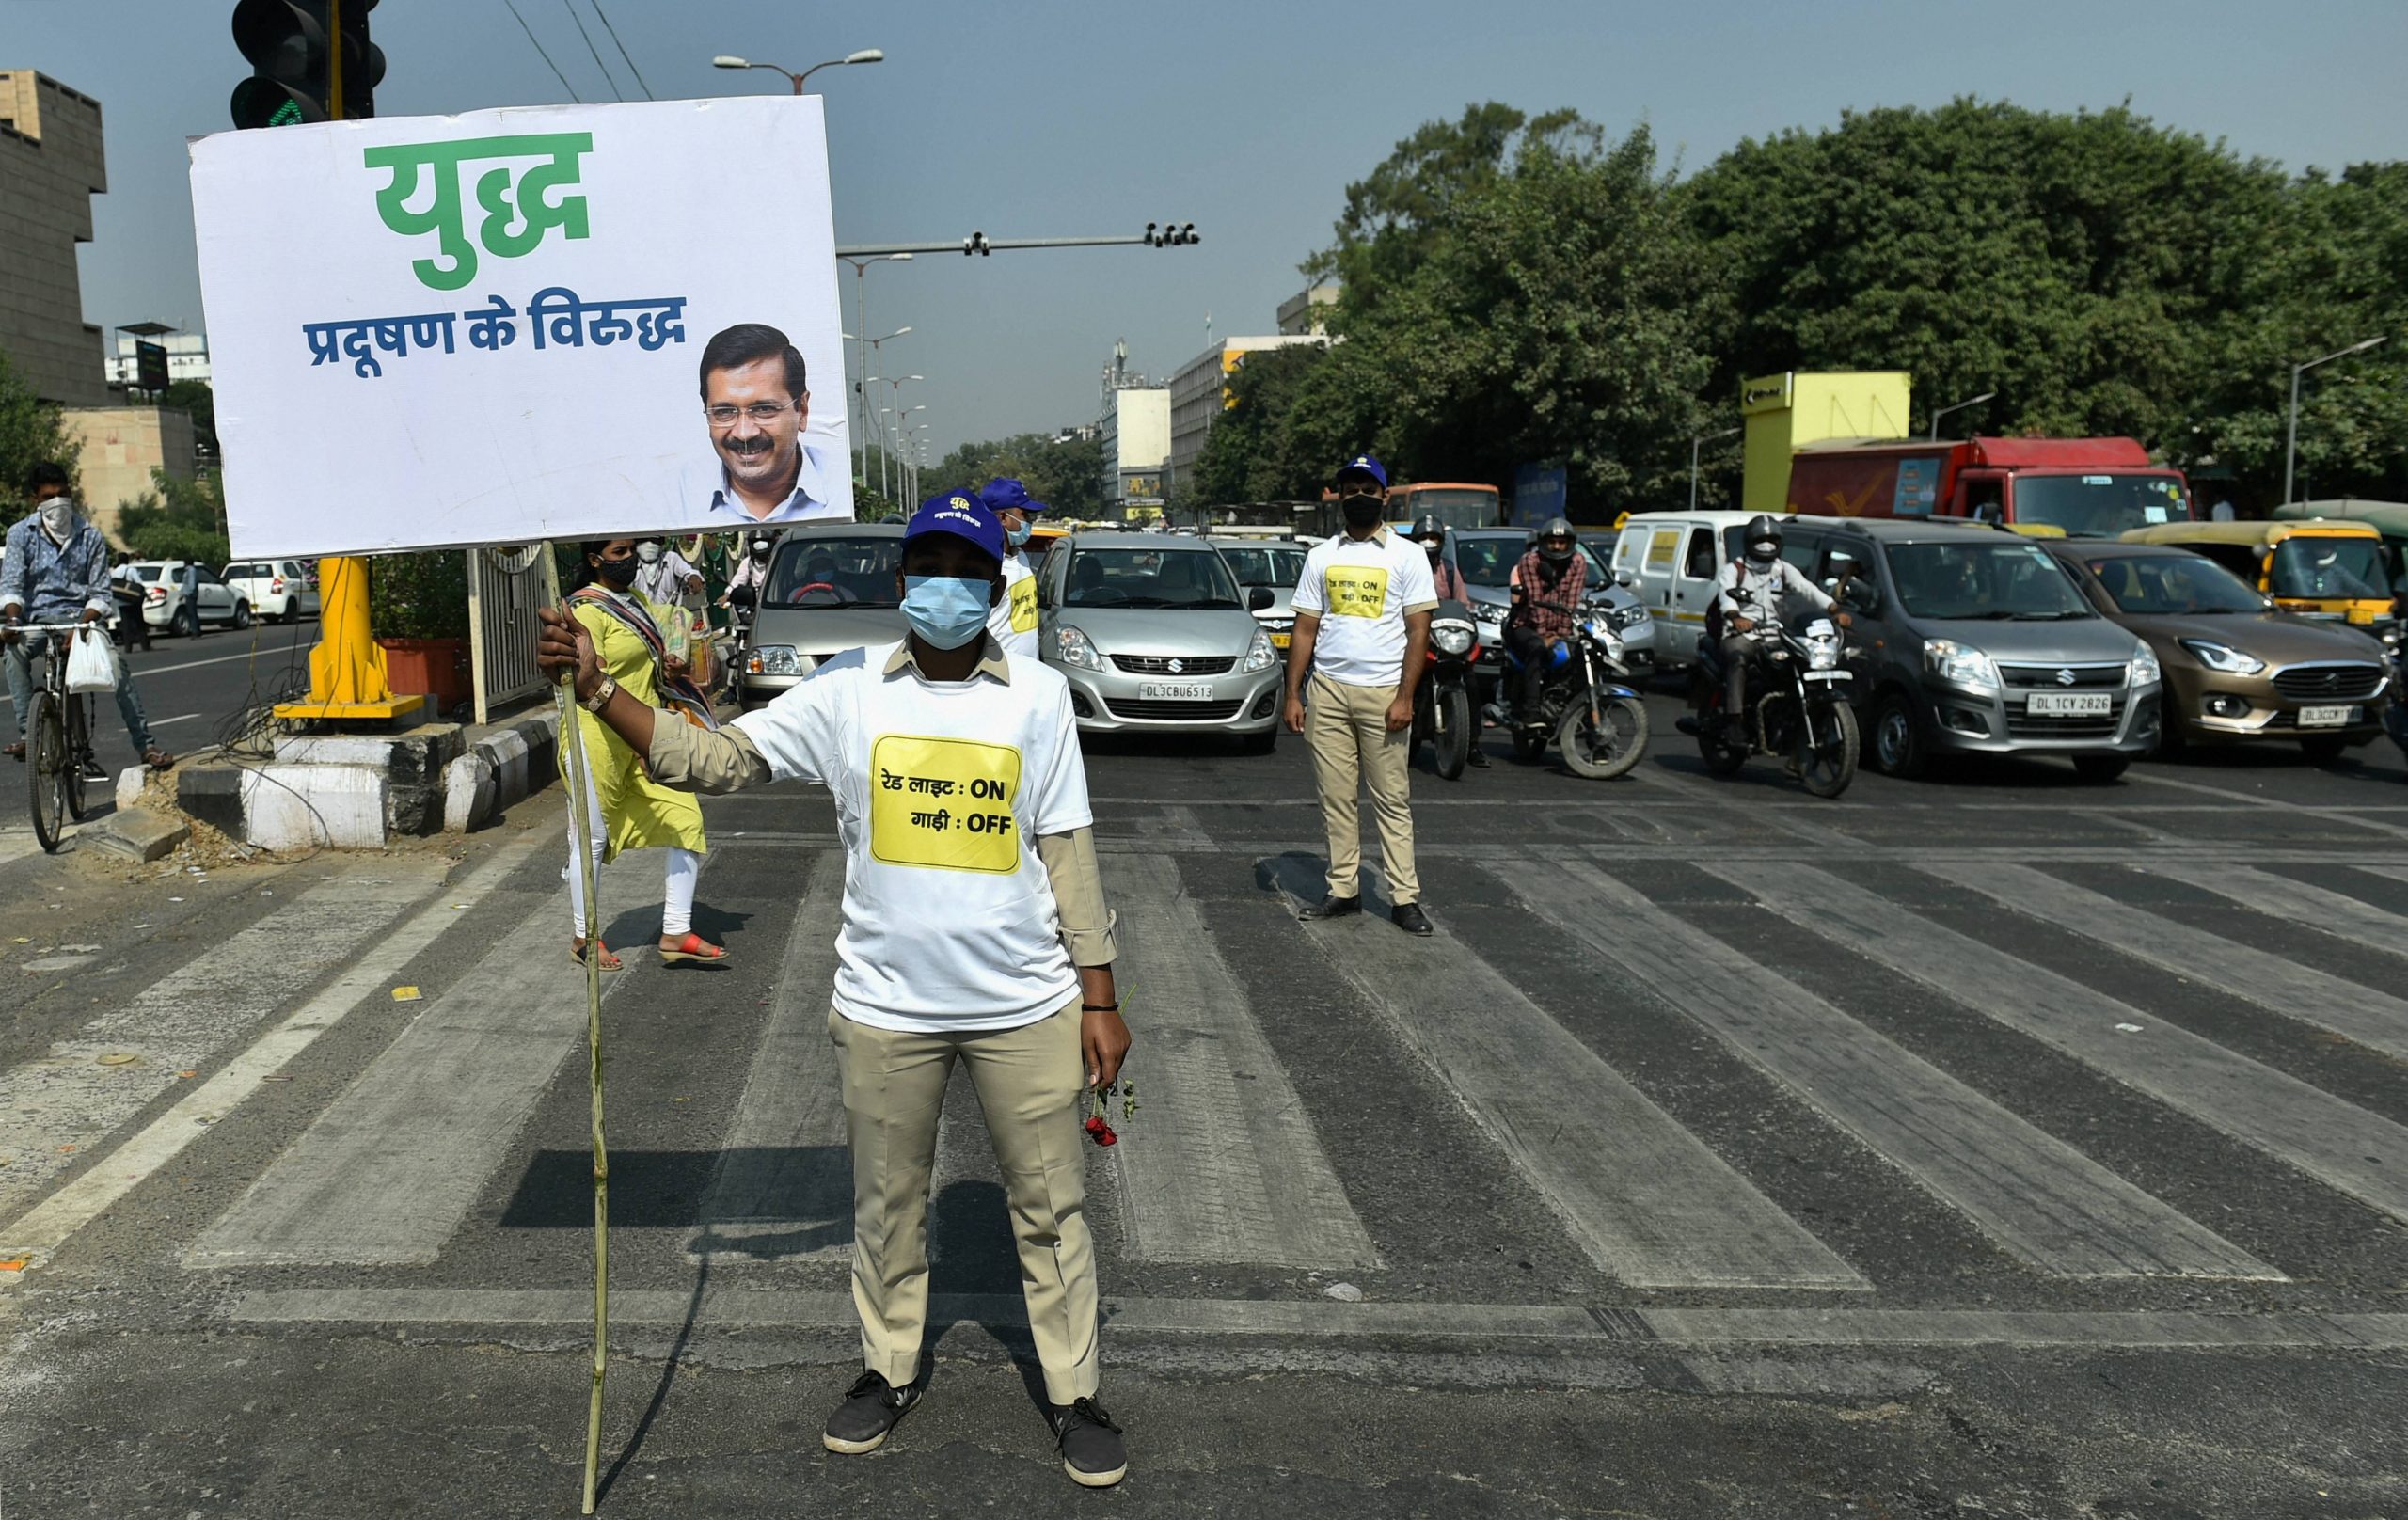 प्रदूषण के खिलाफ दिल्ली सरकार का अभियान, ‘सिग्नल पर गाड़ी बंद करने की अपील’